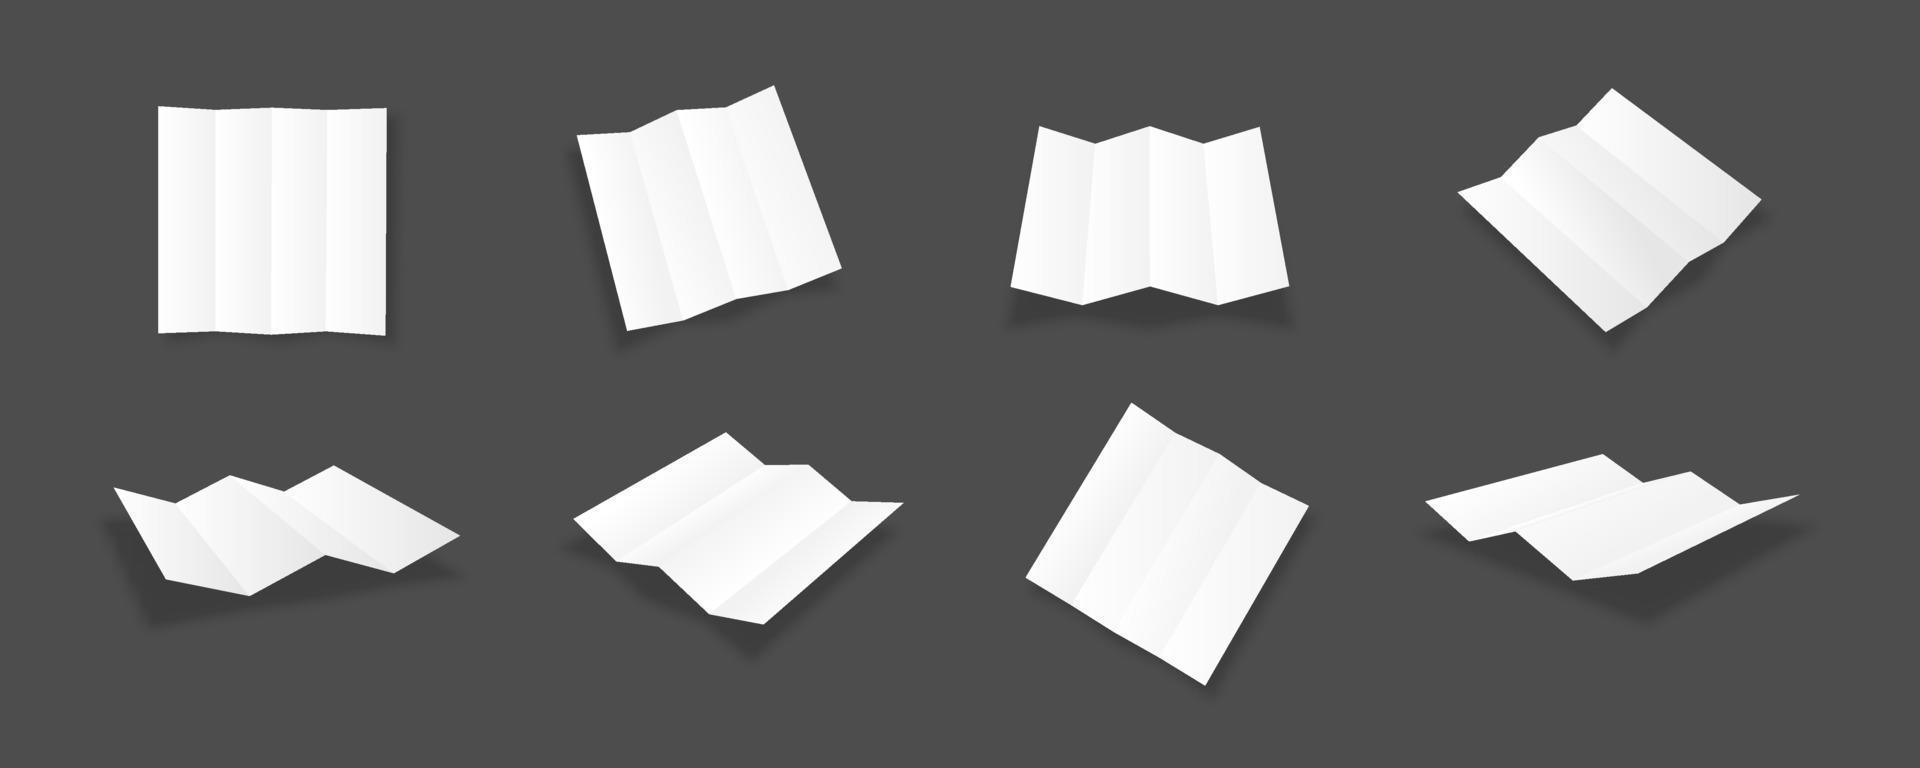 leere weiße vierfache broschürenmodellsammlung vektor